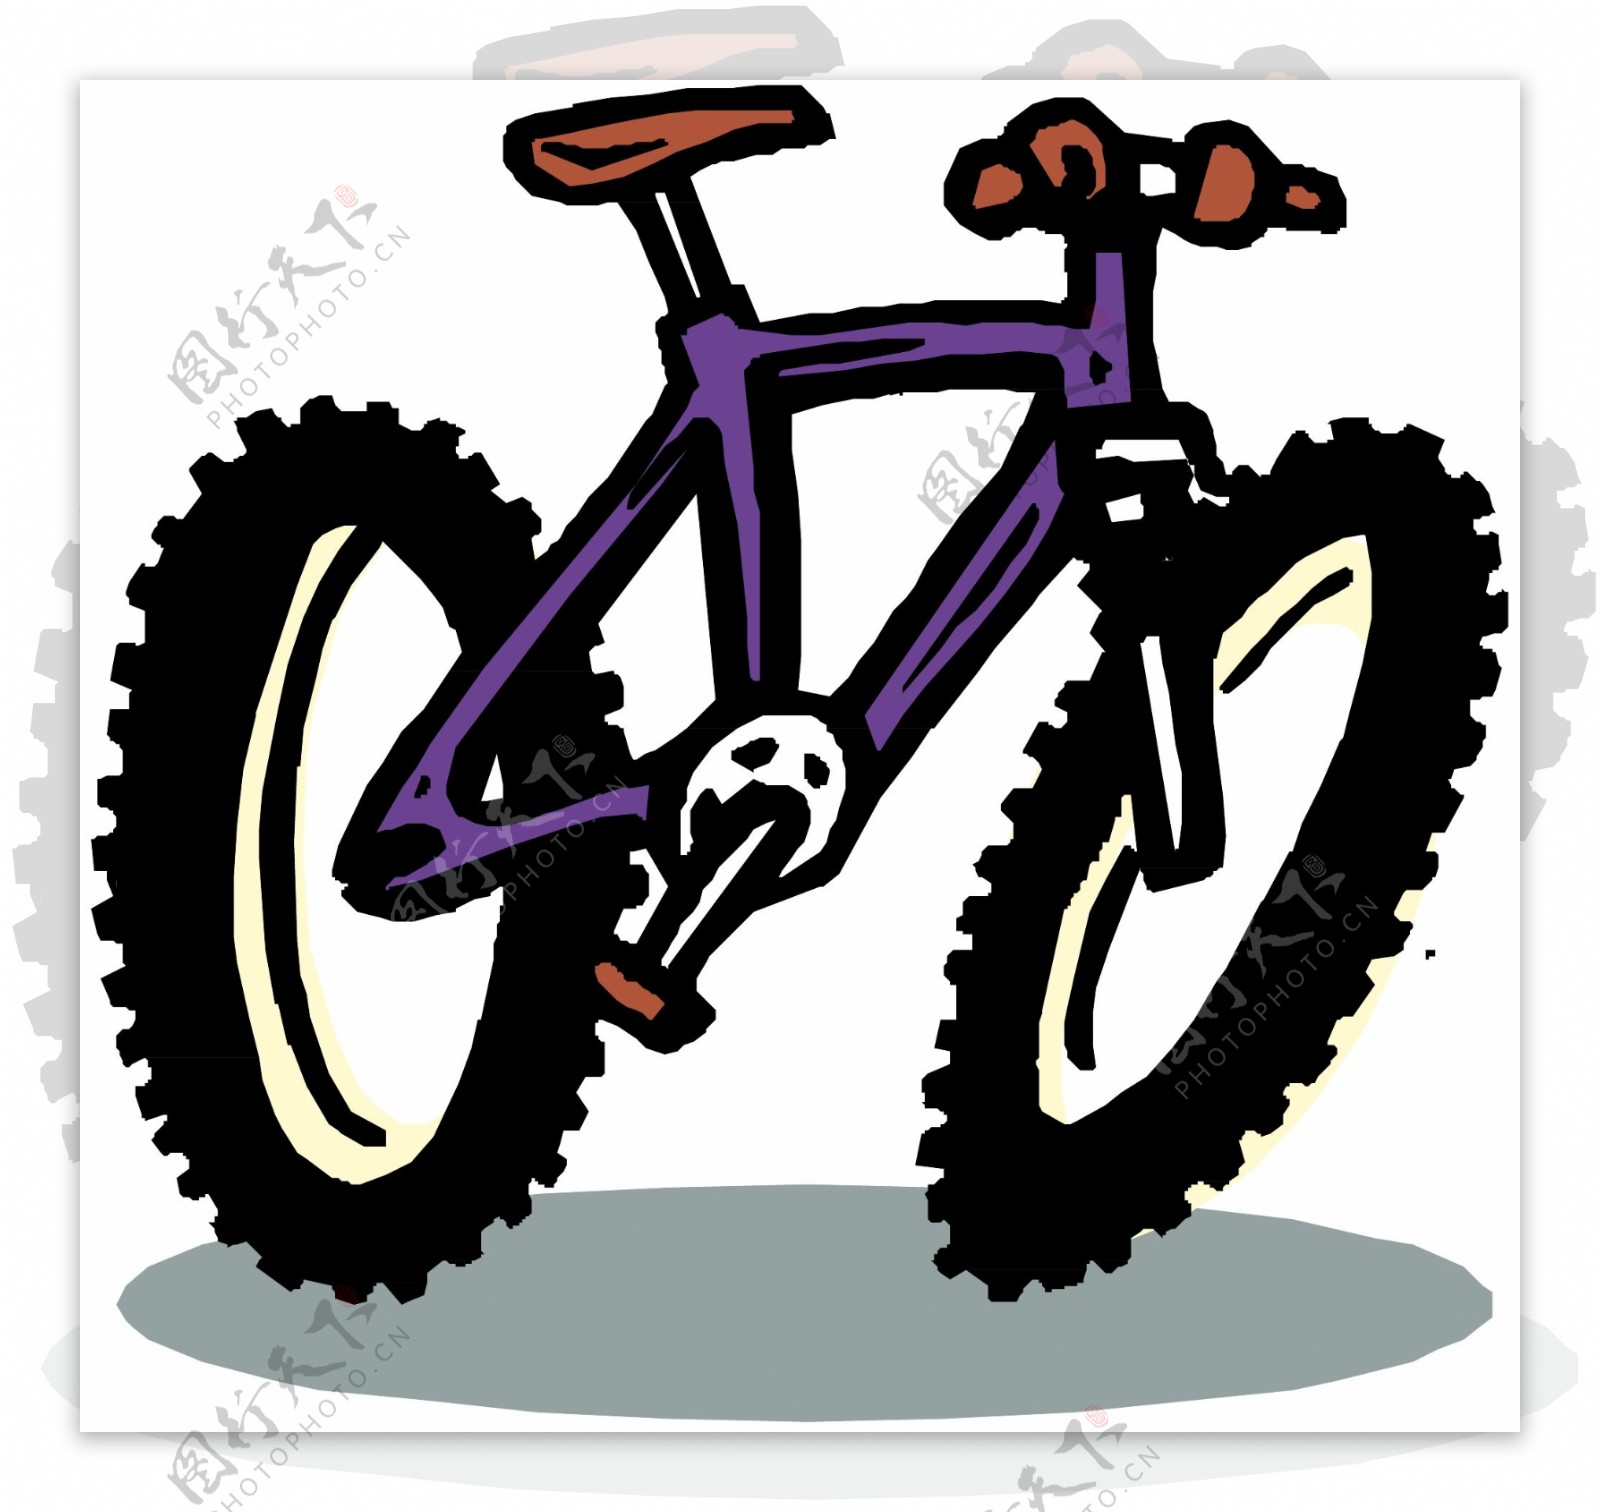 自行车交通工具矢量素材EPS格式0049